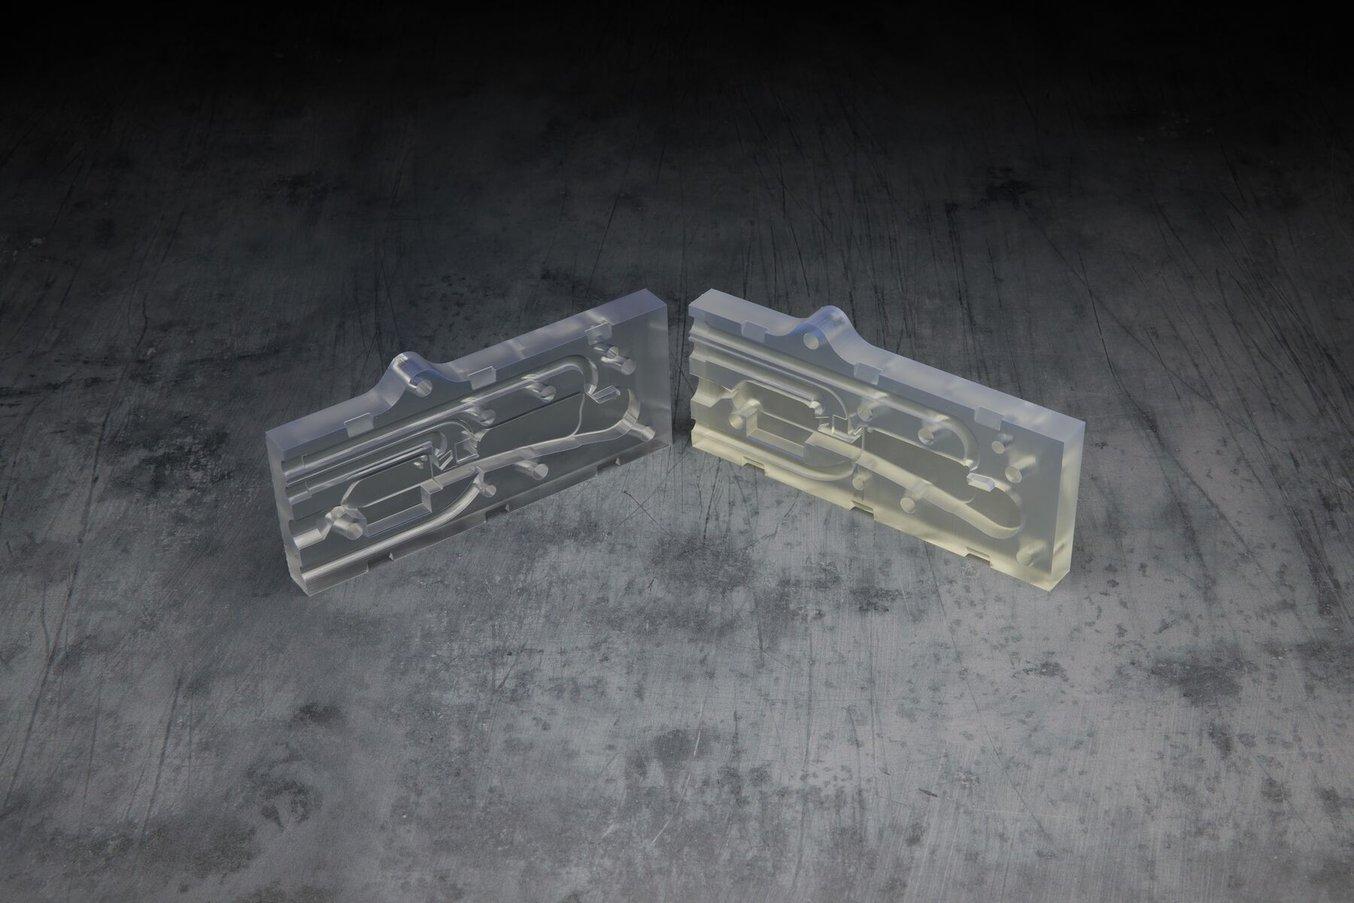 Dos piezas transparentes de un molde. La de la izquierda es más clara y transparente, mientras que la de la derecha es más amarillenta.